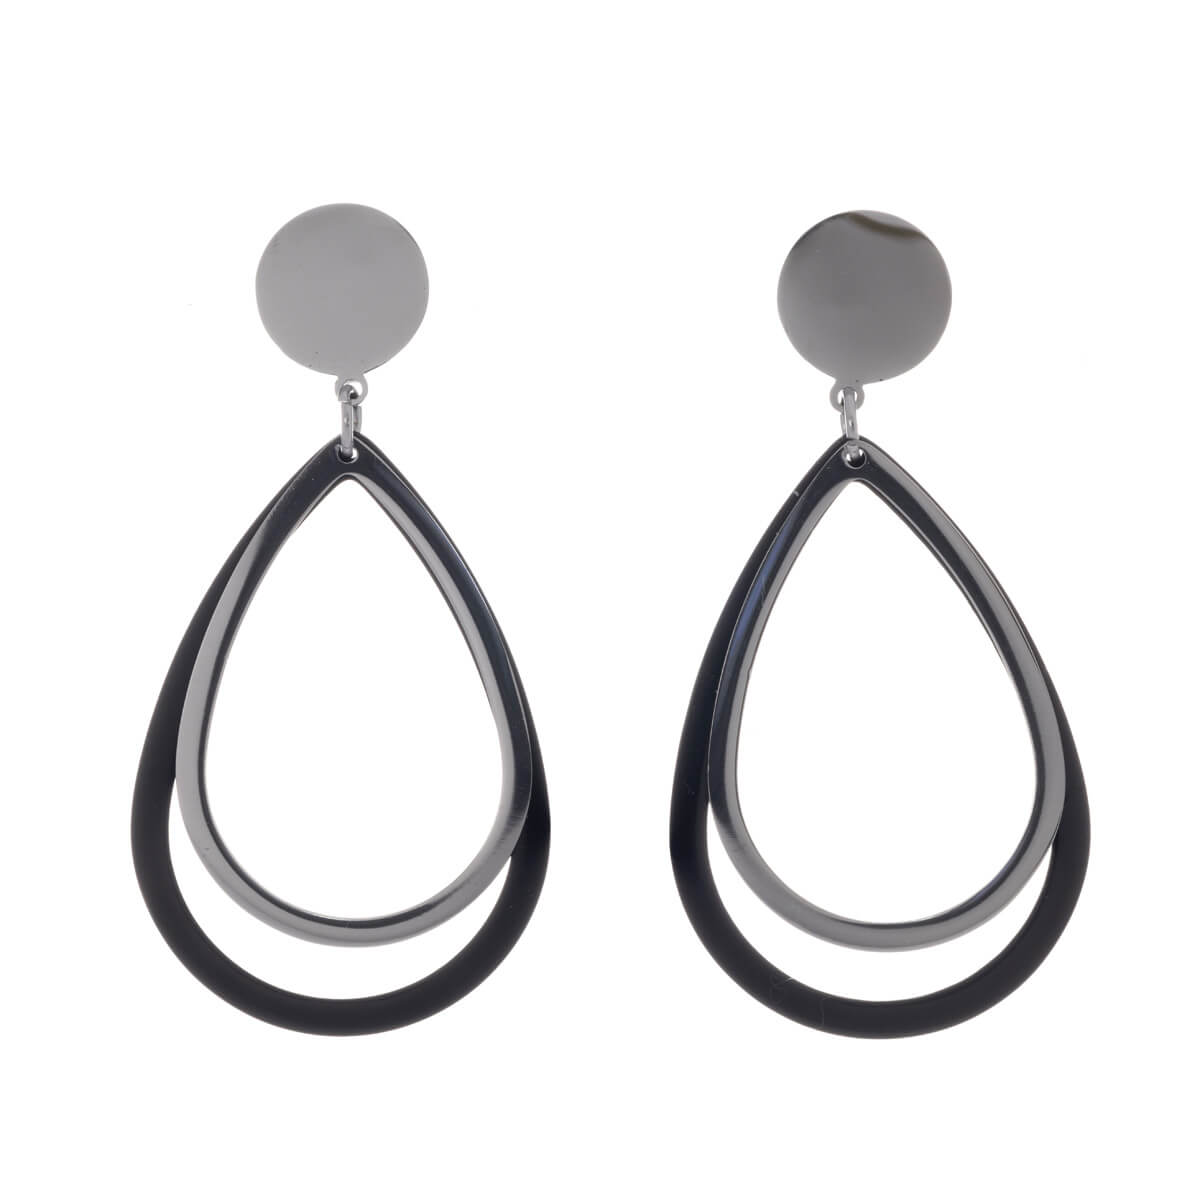 Hanging drops earrings (steel 316L)